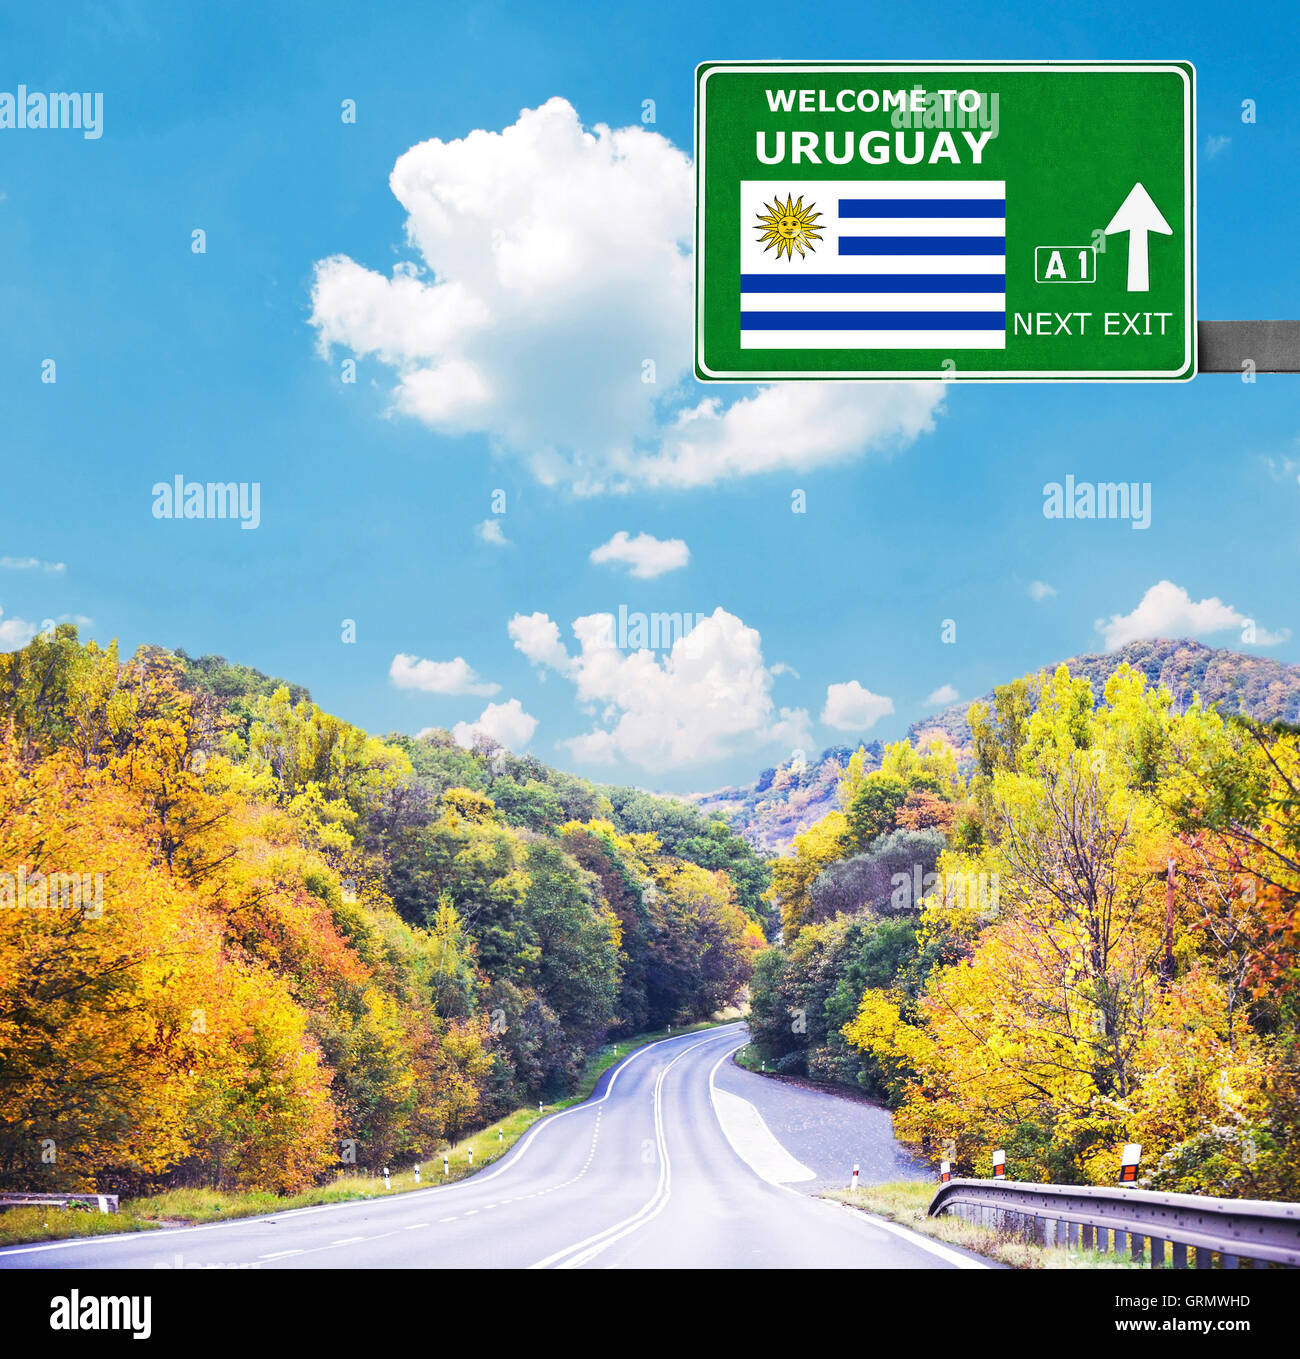 Uruguay-Schild gegen klar blauen Himmel Stockfoto